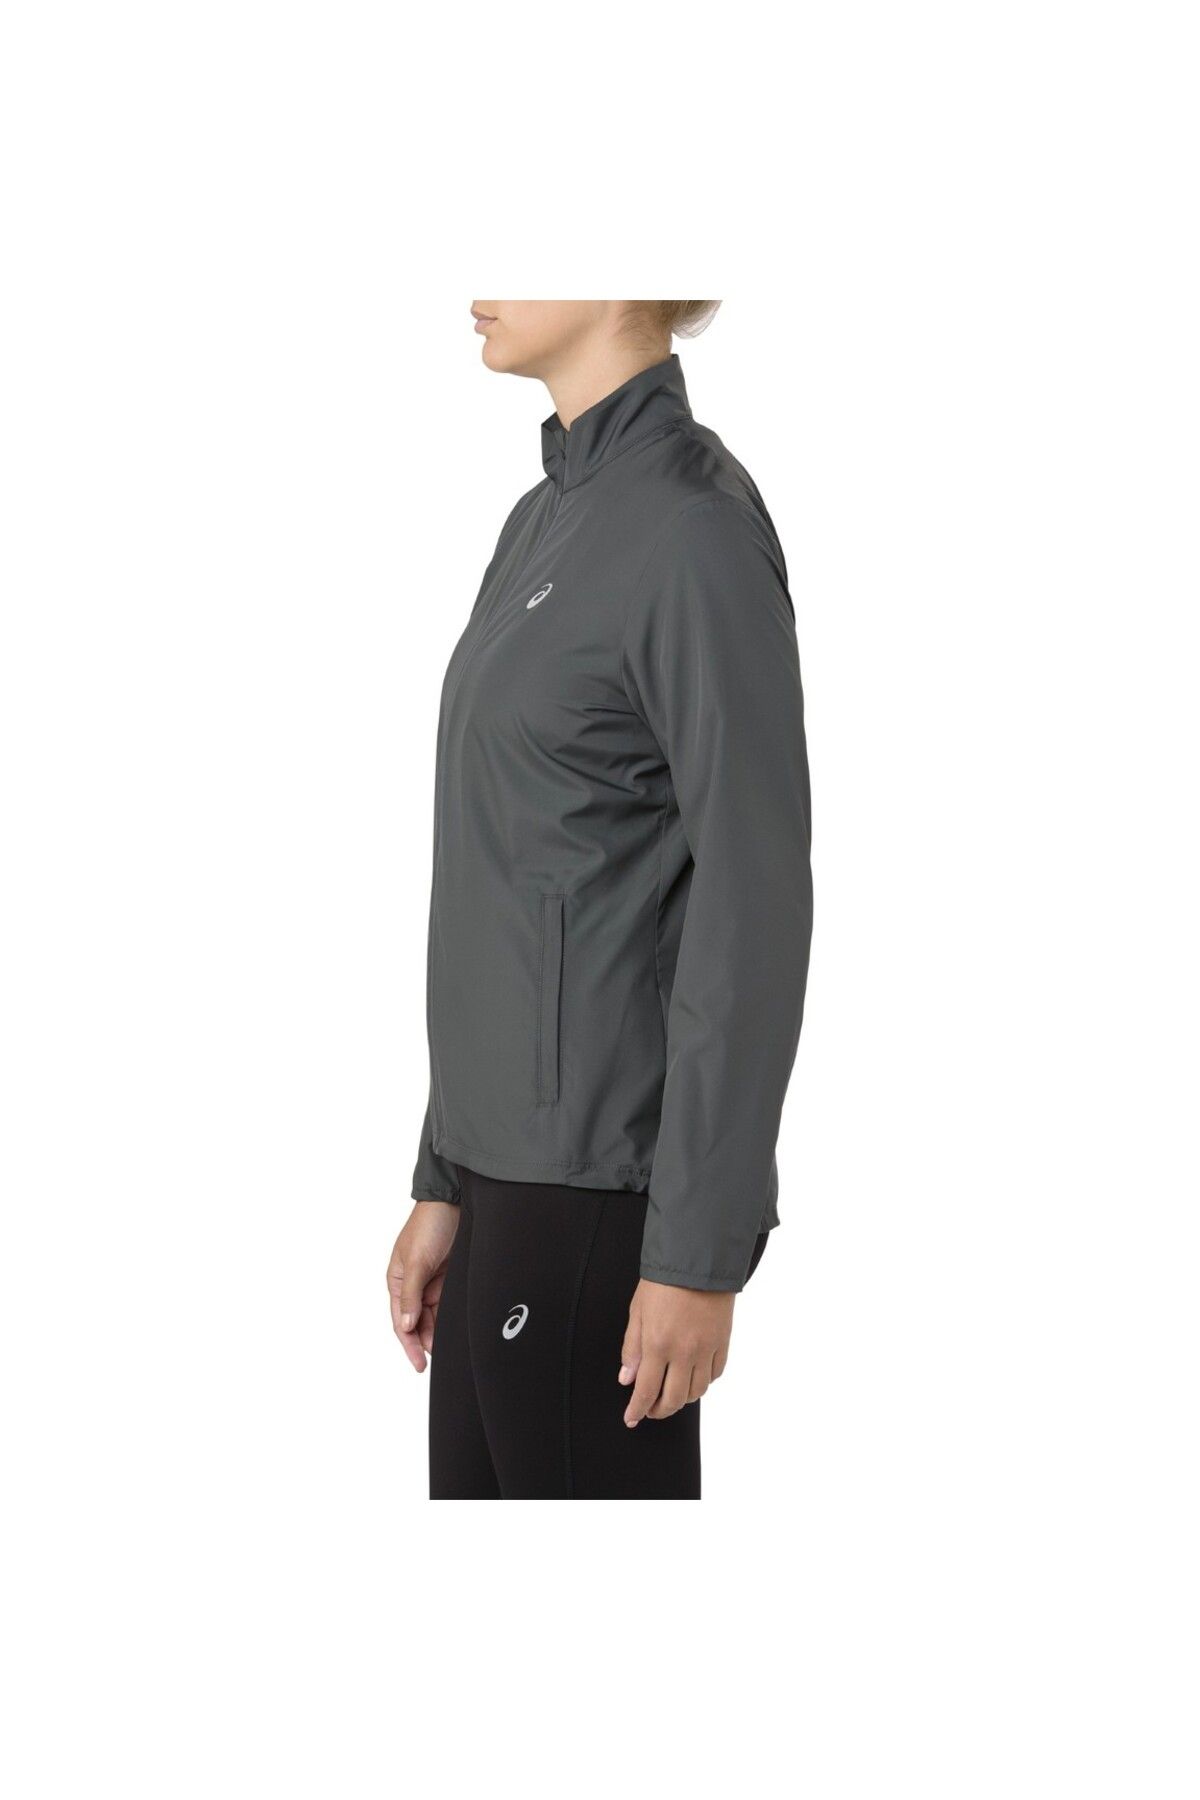 Asics Silver Jacket Kadın Gri Ceket 2012a035-020